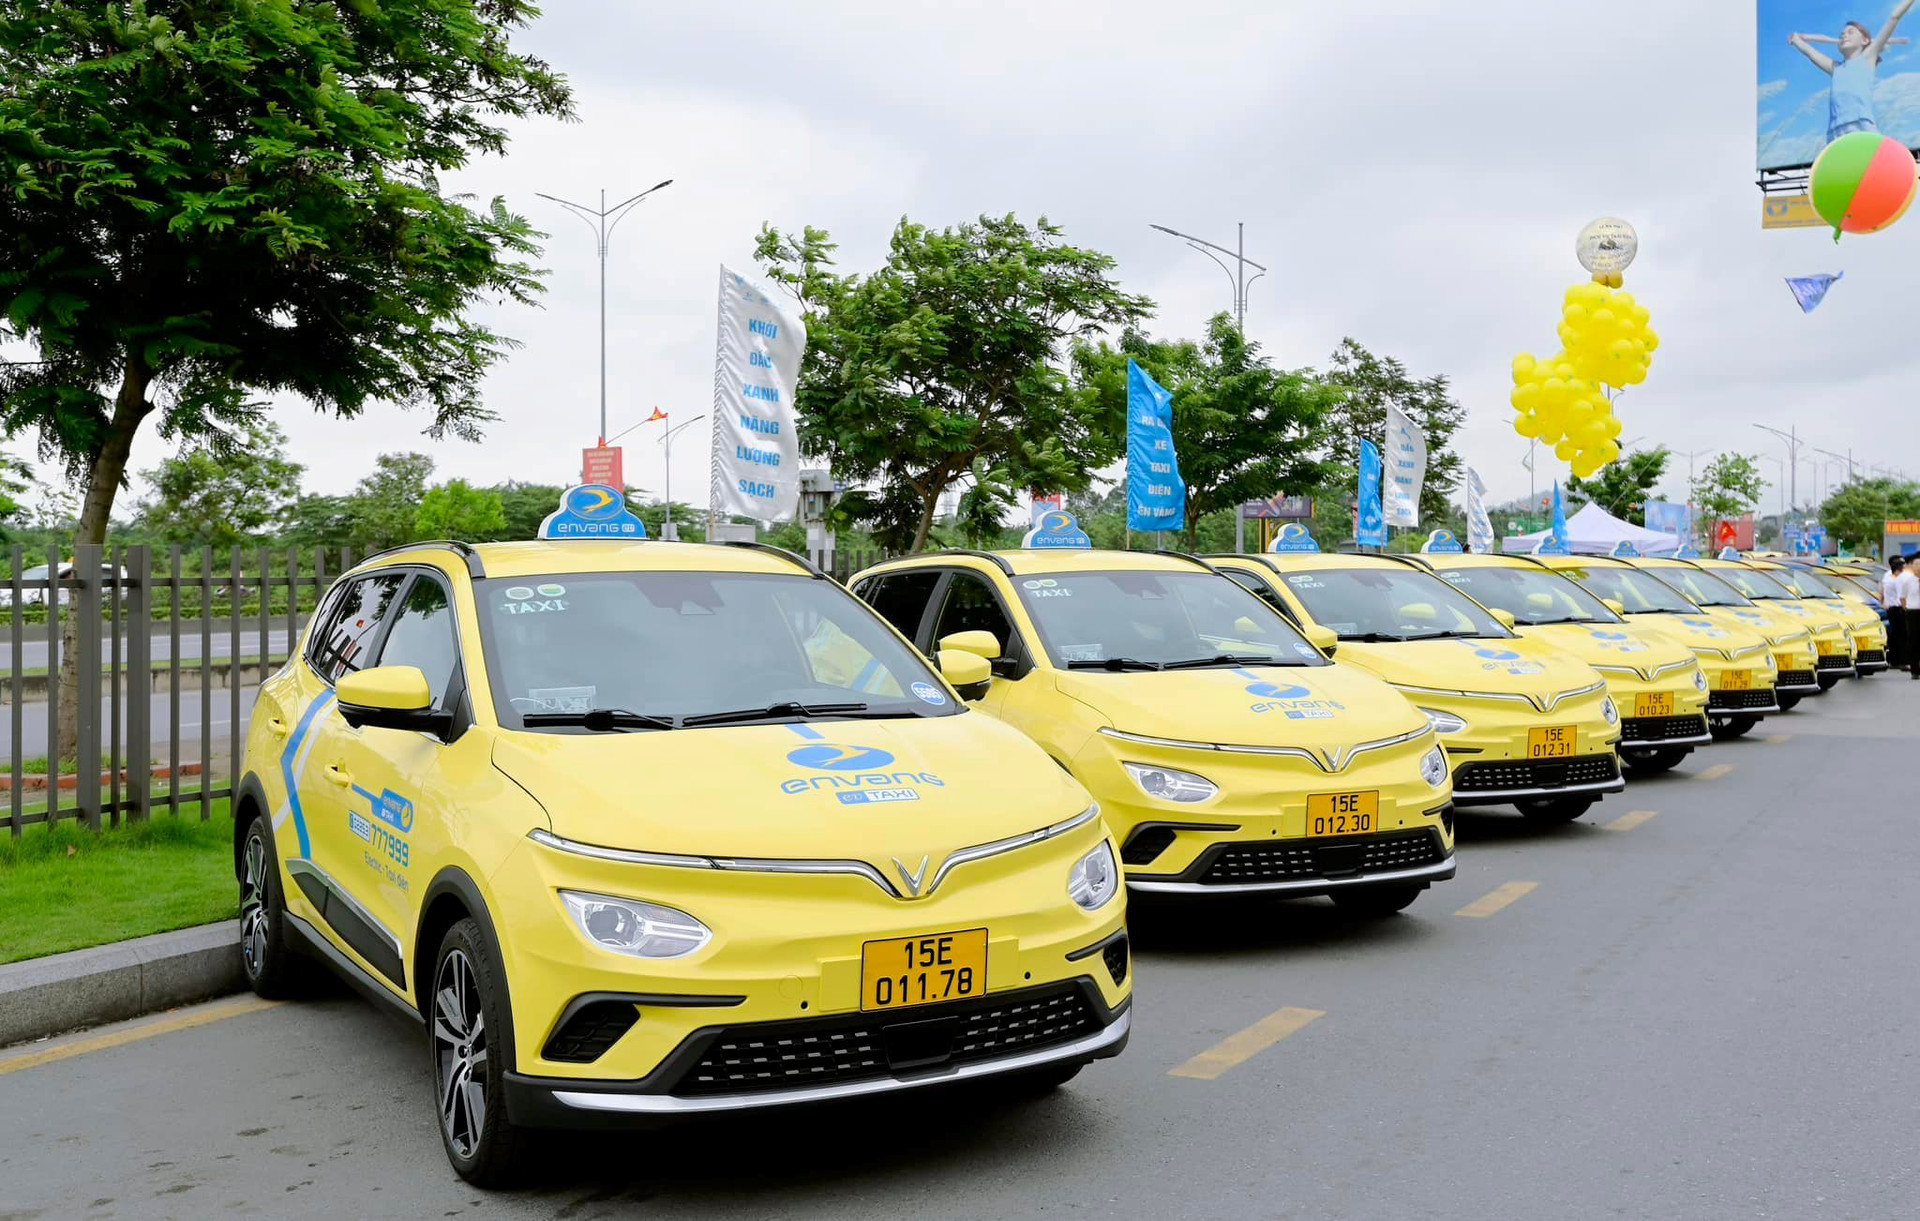 Én Vàng Taxi mua + thuê 150 xe điện từ công ty của ông Phạm Nhật Vượng, mở dịch vụ taxi điện đầu tiên ở Hải Phòng 